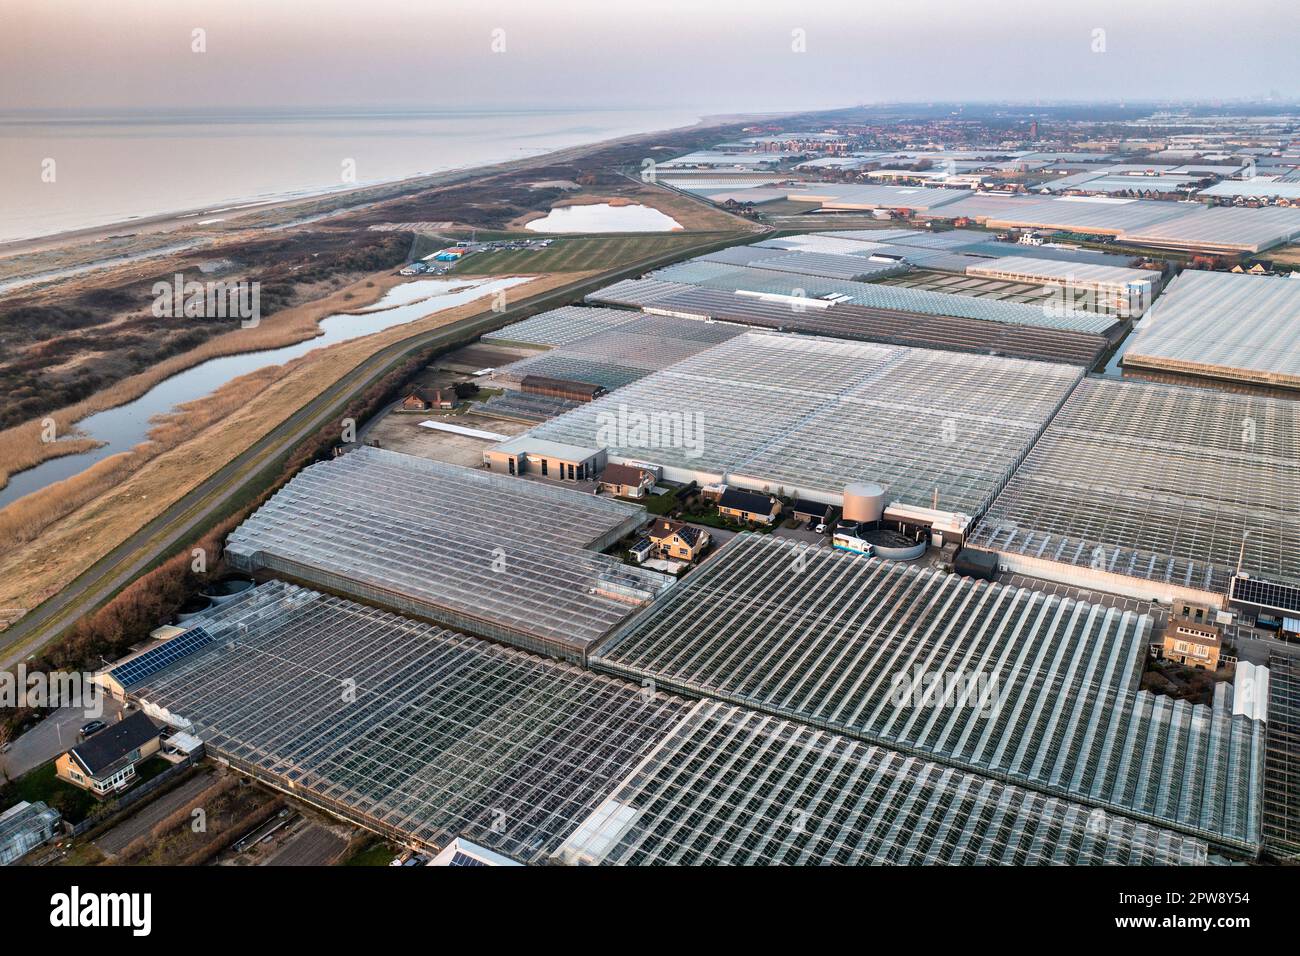 Niederlande, Õs-Gravezande, Westland. Gartenbau in Gewächshäusern. Dünen an der Nordseeküste. Luftaufnahme. Stockfoto